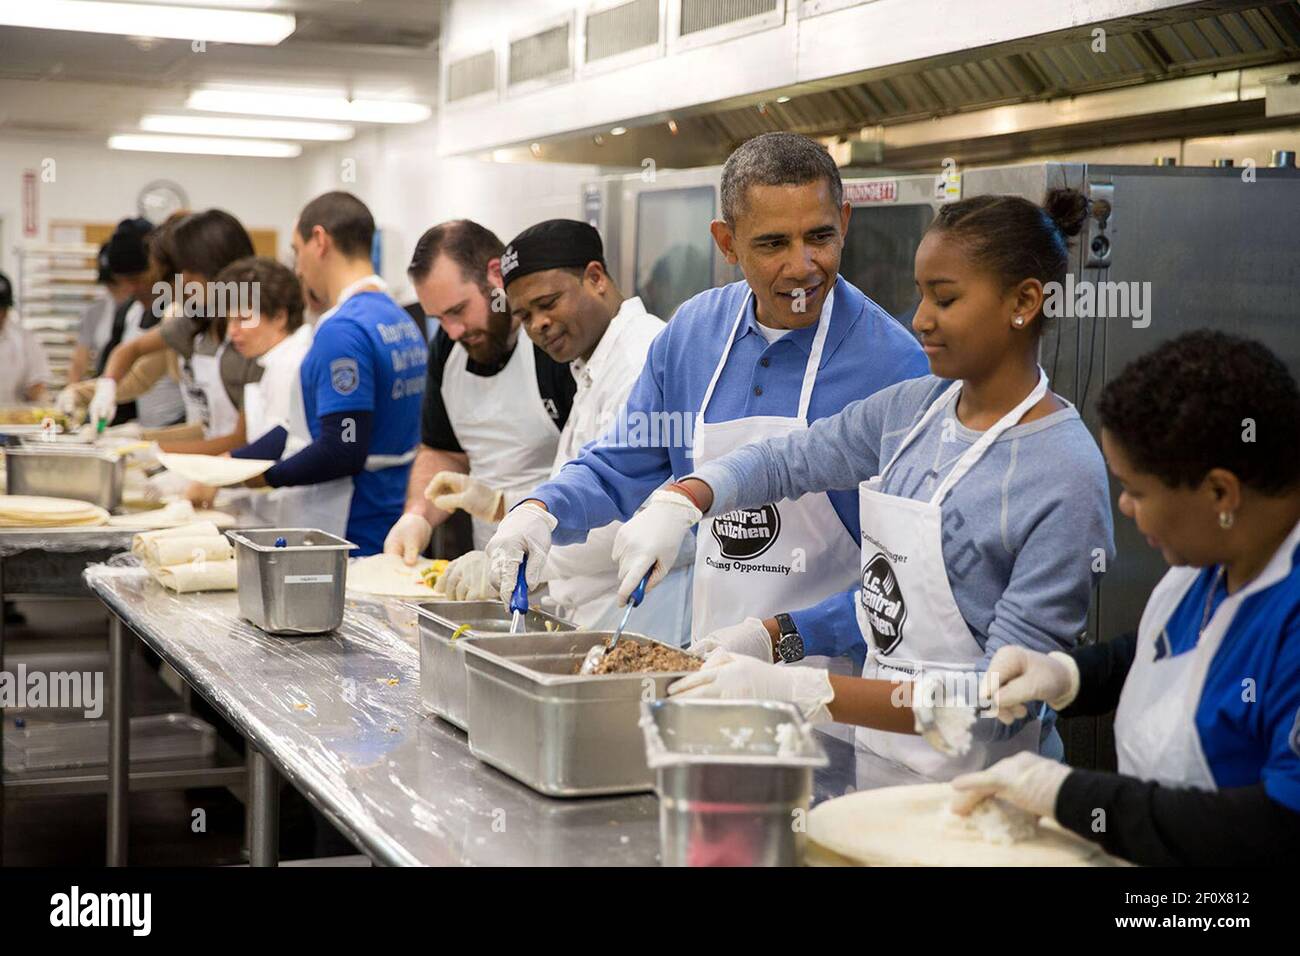 Il presidente Barack Obama e sua figlia Sasha assemblano burritos durante un evento Martin Luther King, Jr. Day of Service alla DC Central Kitchen di Washington, D.C., 20 gennaio 2014. Foto Stock